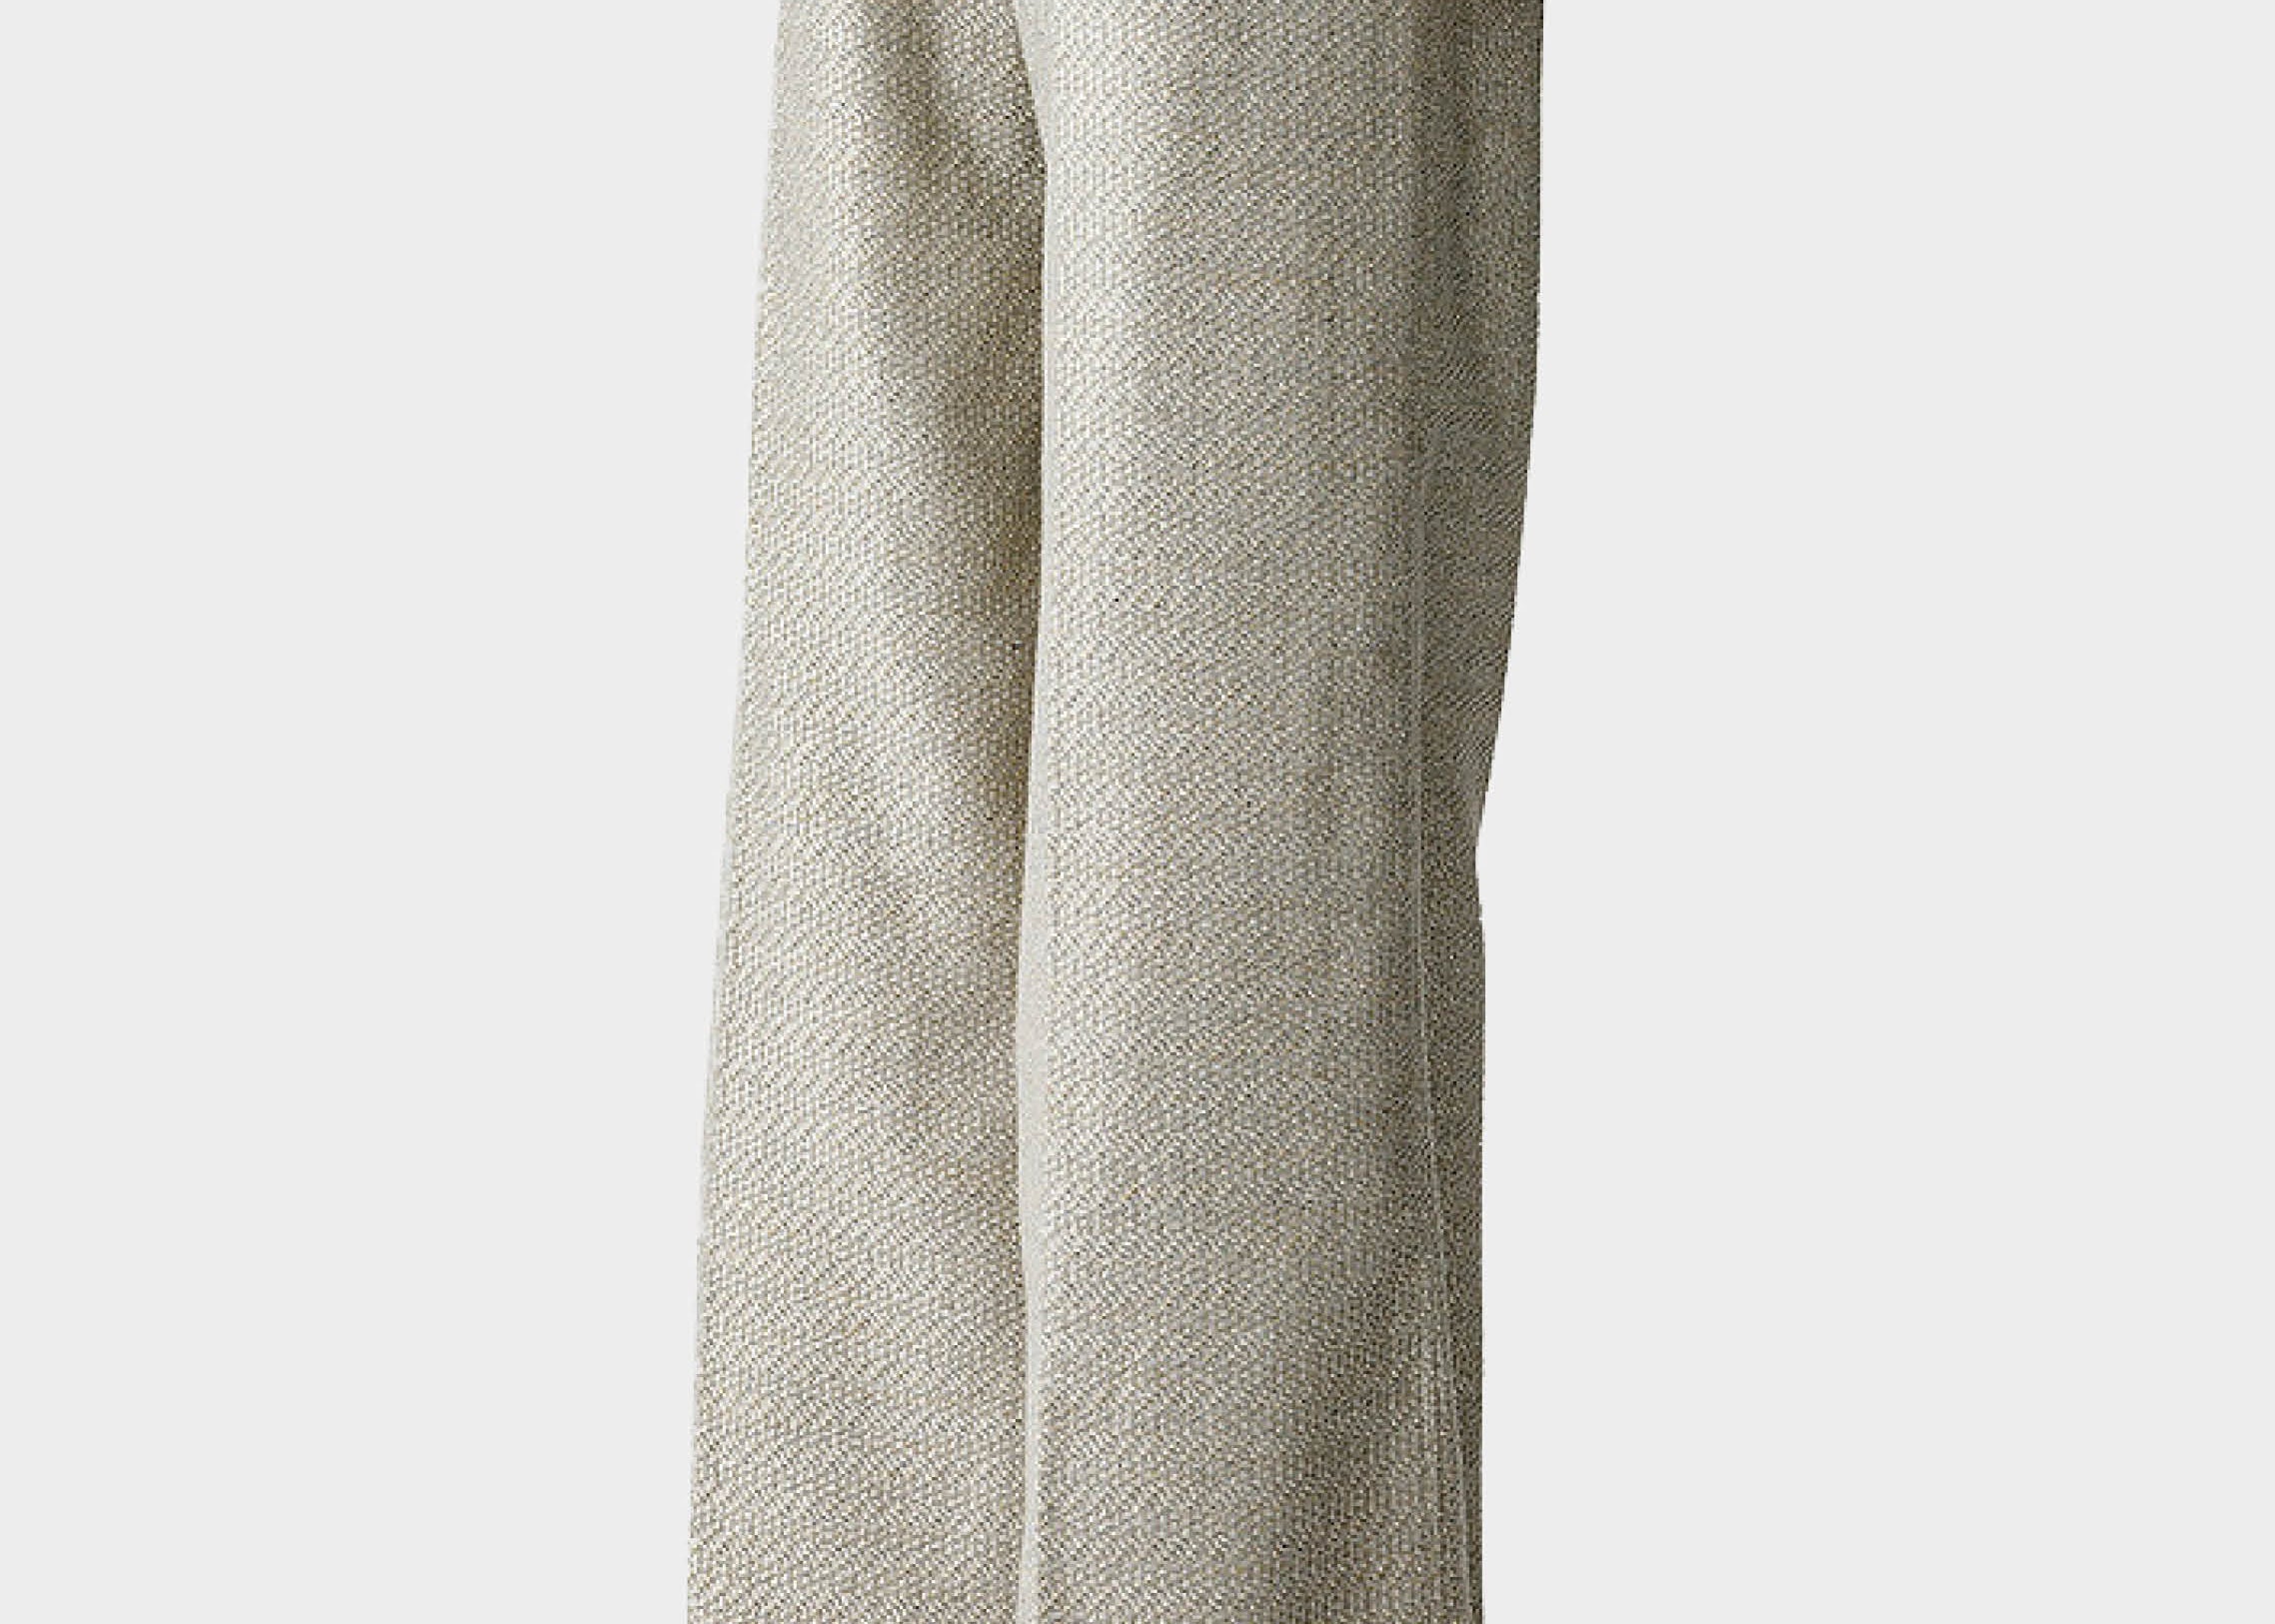 Pantalón wide leg de la firma italiana Forte Forte. Algodón lurex en color plateado. Cintura con trebillas y bolsillos laterales. Envíos gratuitos a partir de 200€. Devoluciones fáciles.